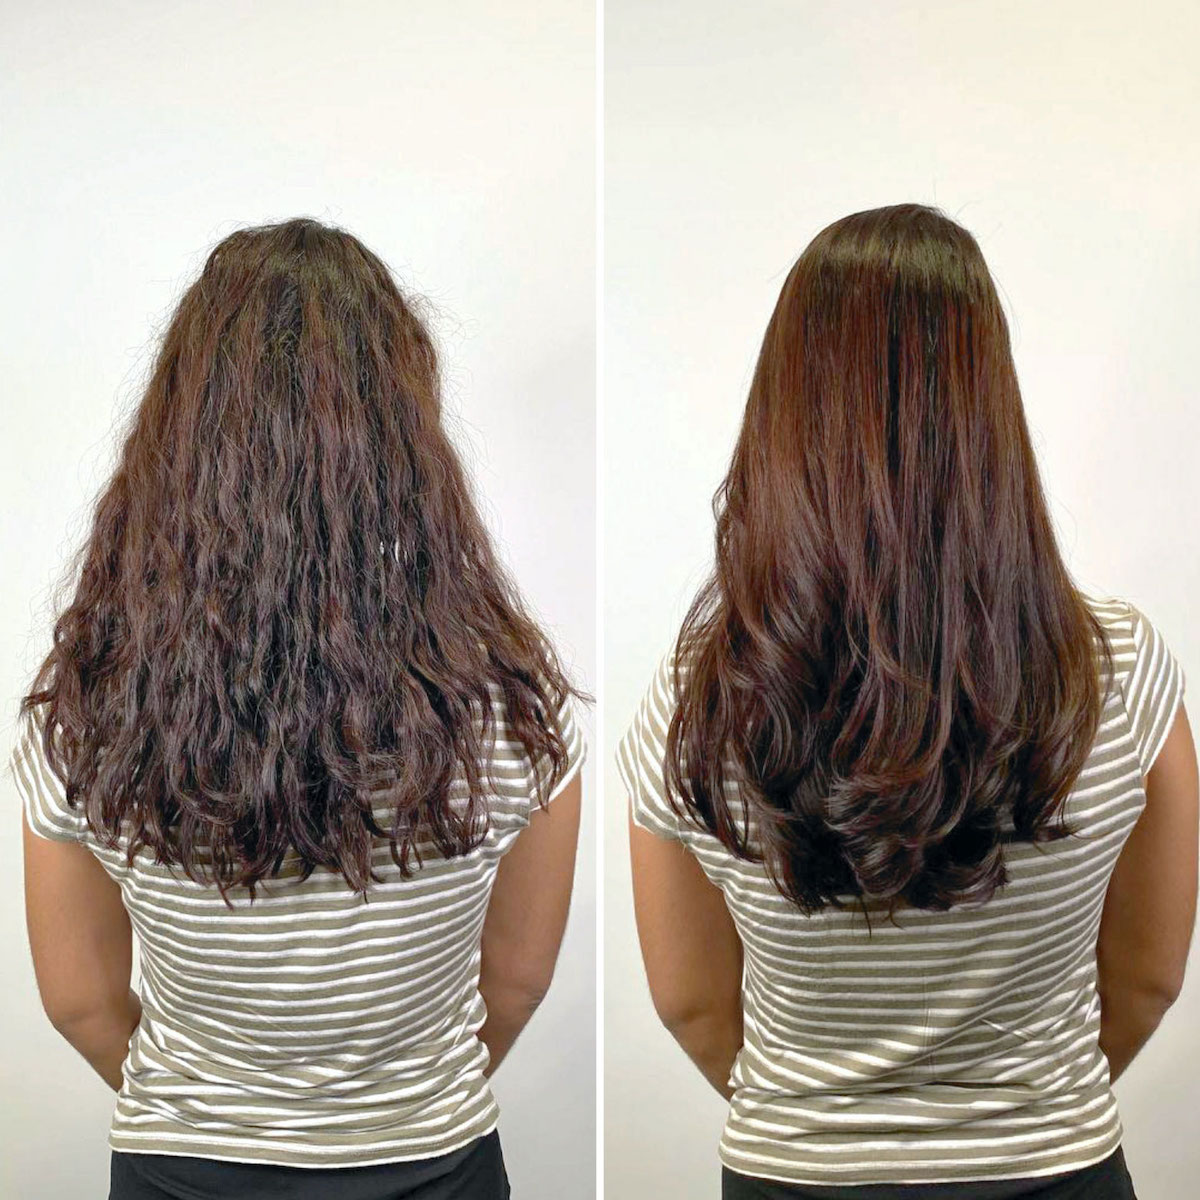 trattamento laminazione capelli prima e dopo chioma lunga colore castano